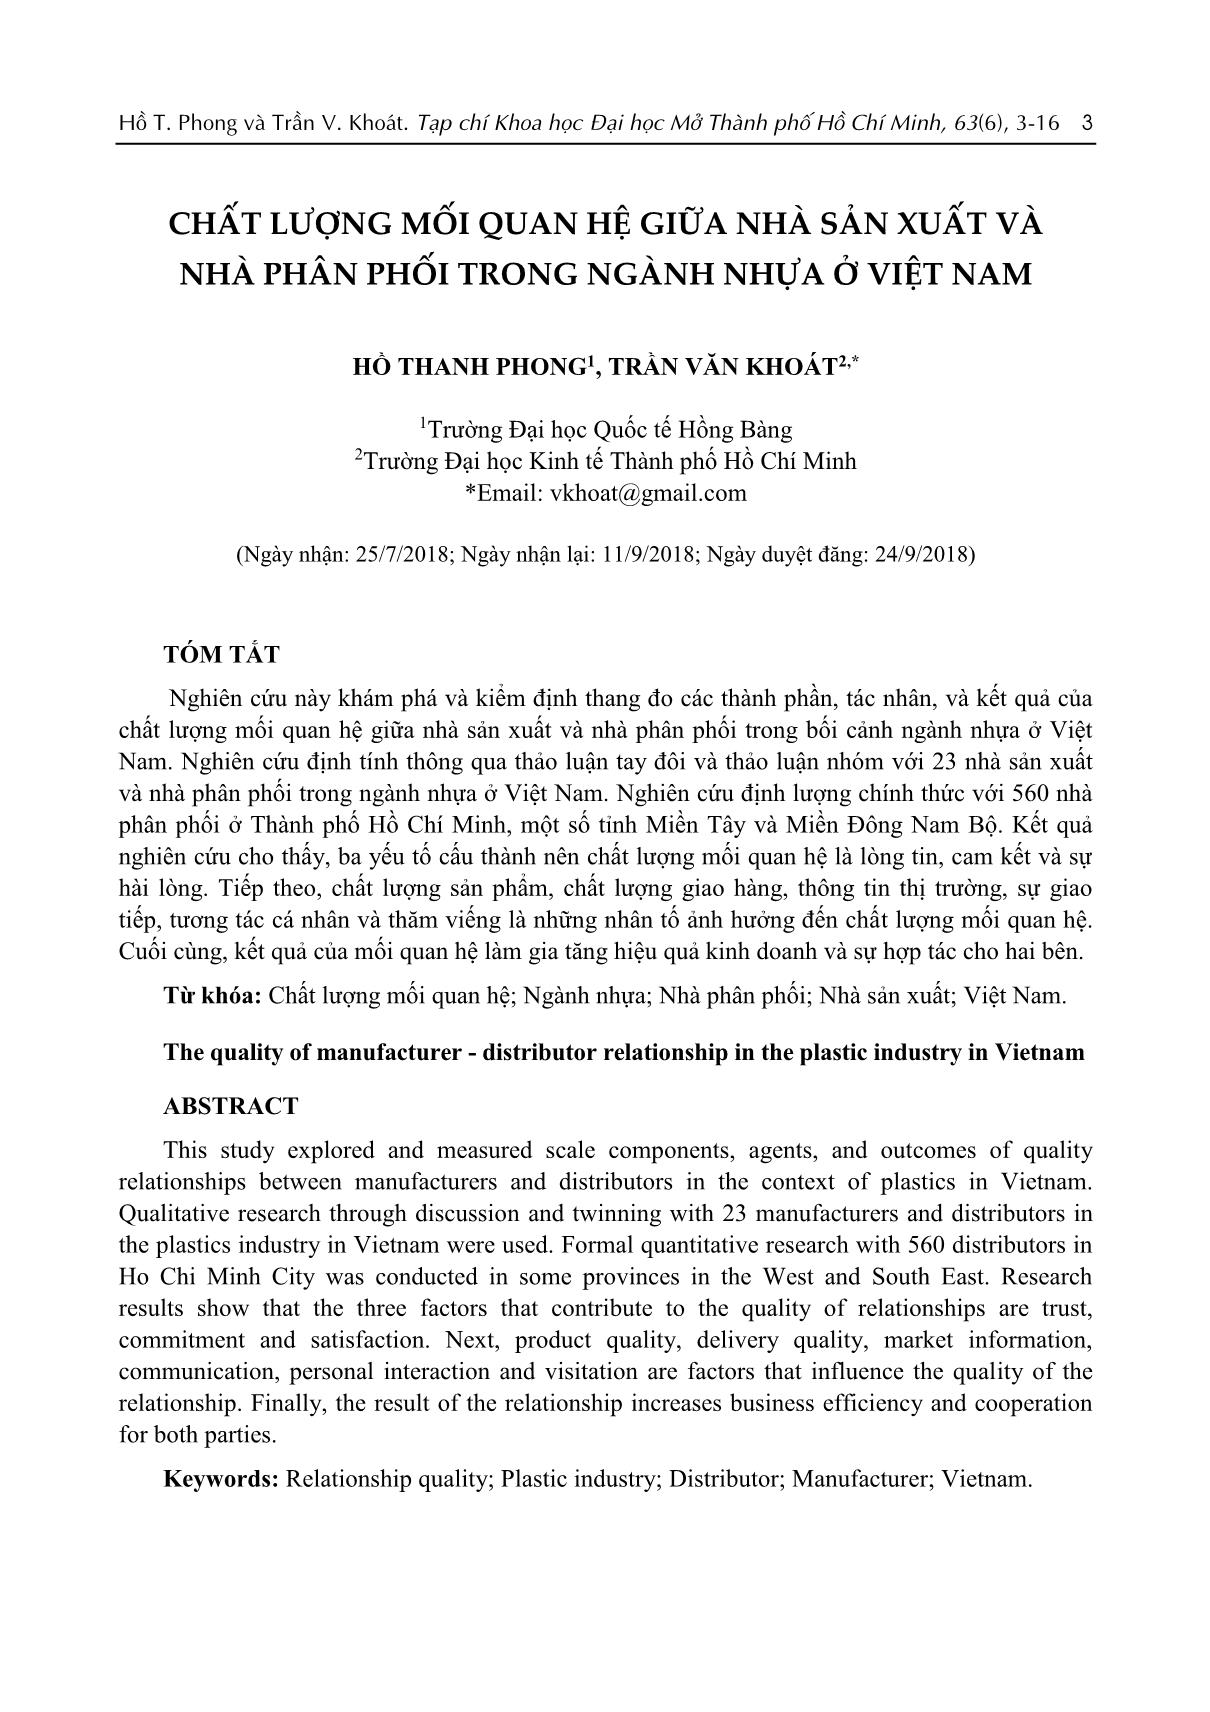 Chất lượng mối quan hệ giữa nhà sản xuất và nhà phân phối trong ngành nhựa ở Việt Nam trang 1